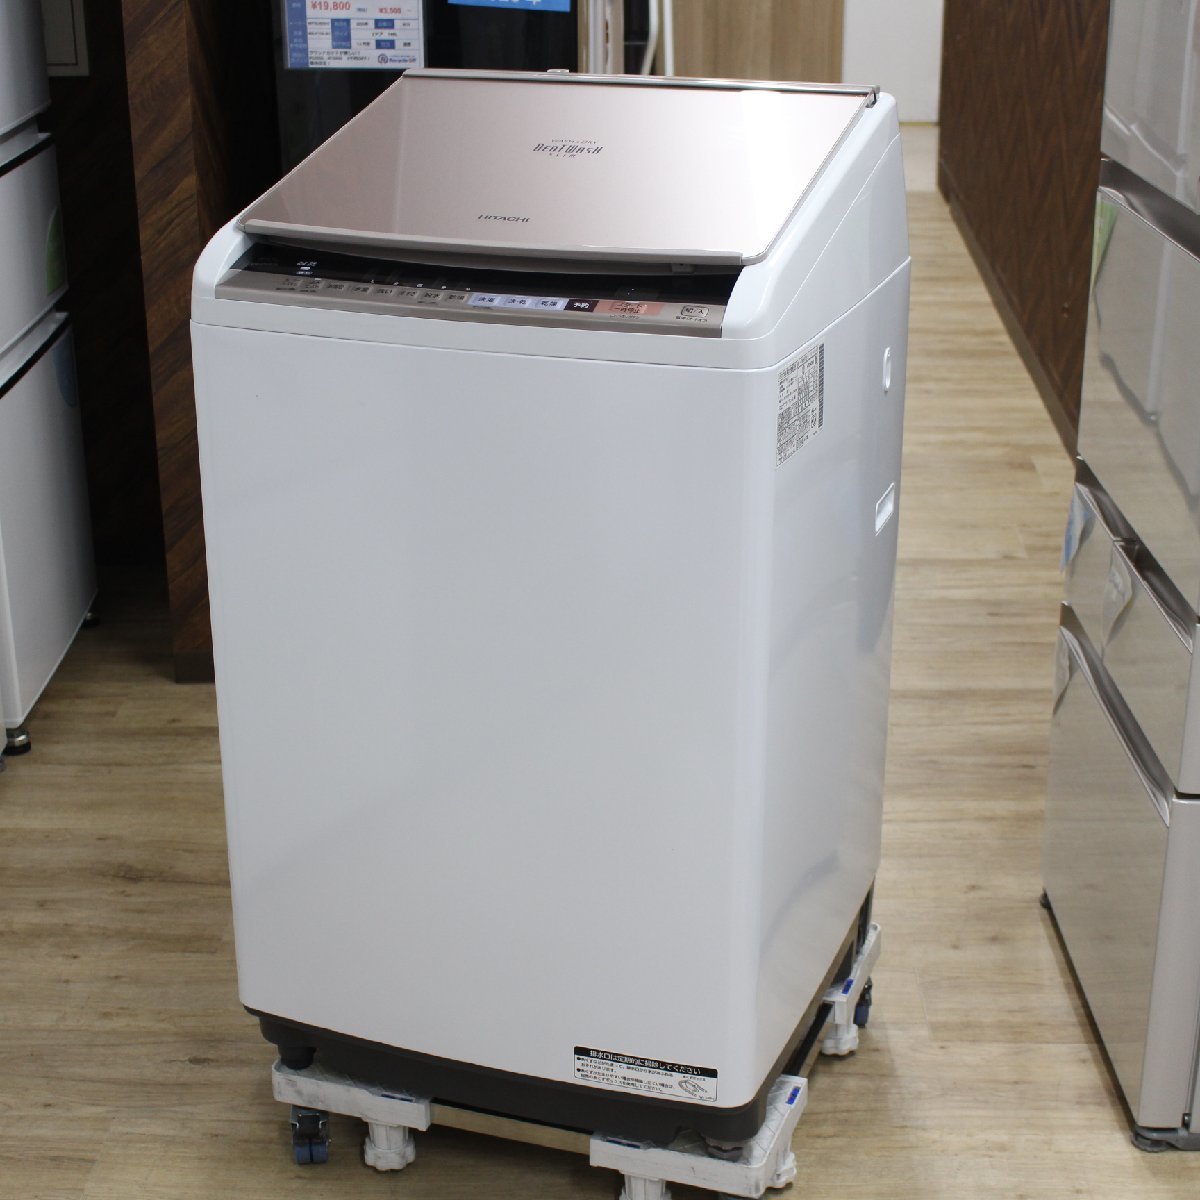 川崎市幸区にて 日立 縦型洗濯乾燥機 BW-DV80B 2018年製 を出張買取させて頂きました。